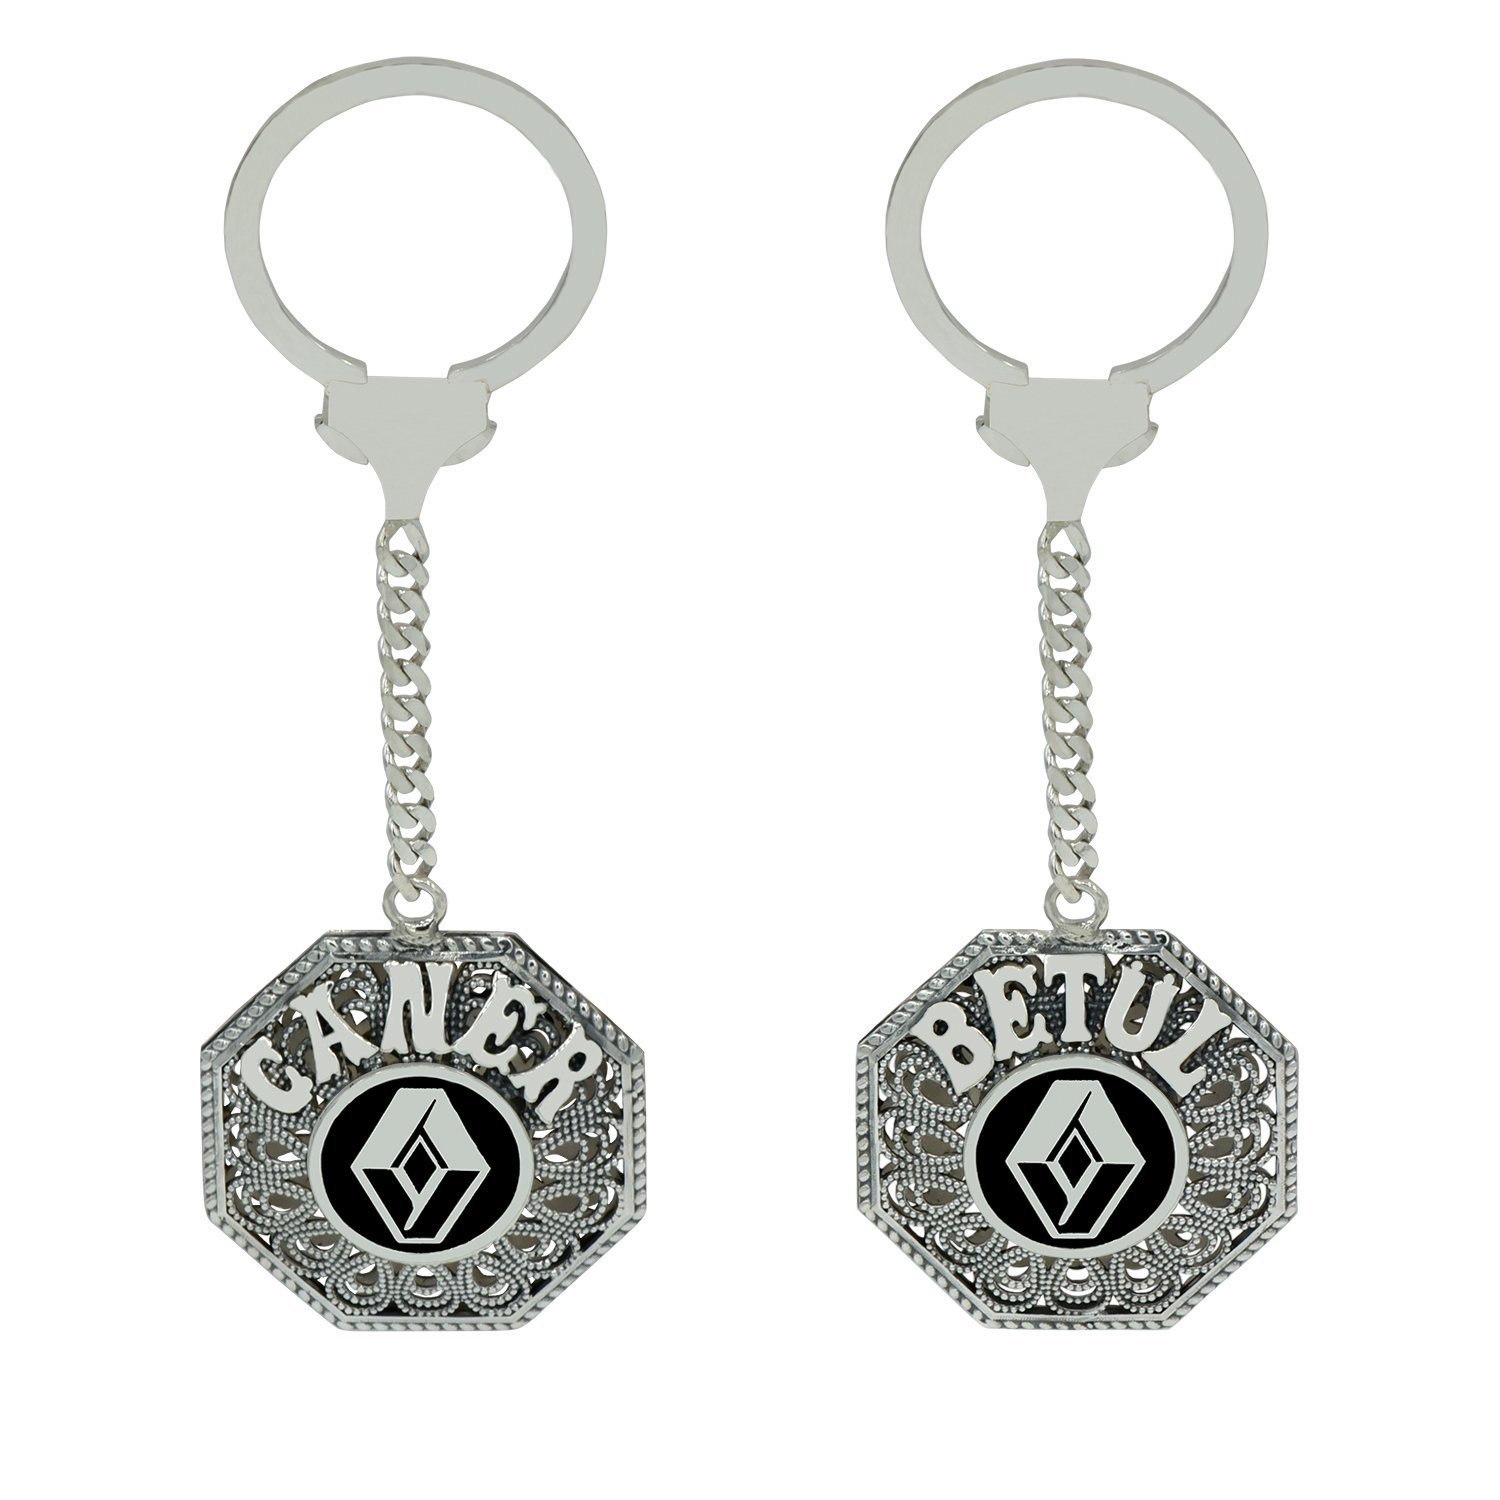 Gümüş Renault Logolu Telkari İsimli Anahtarlık